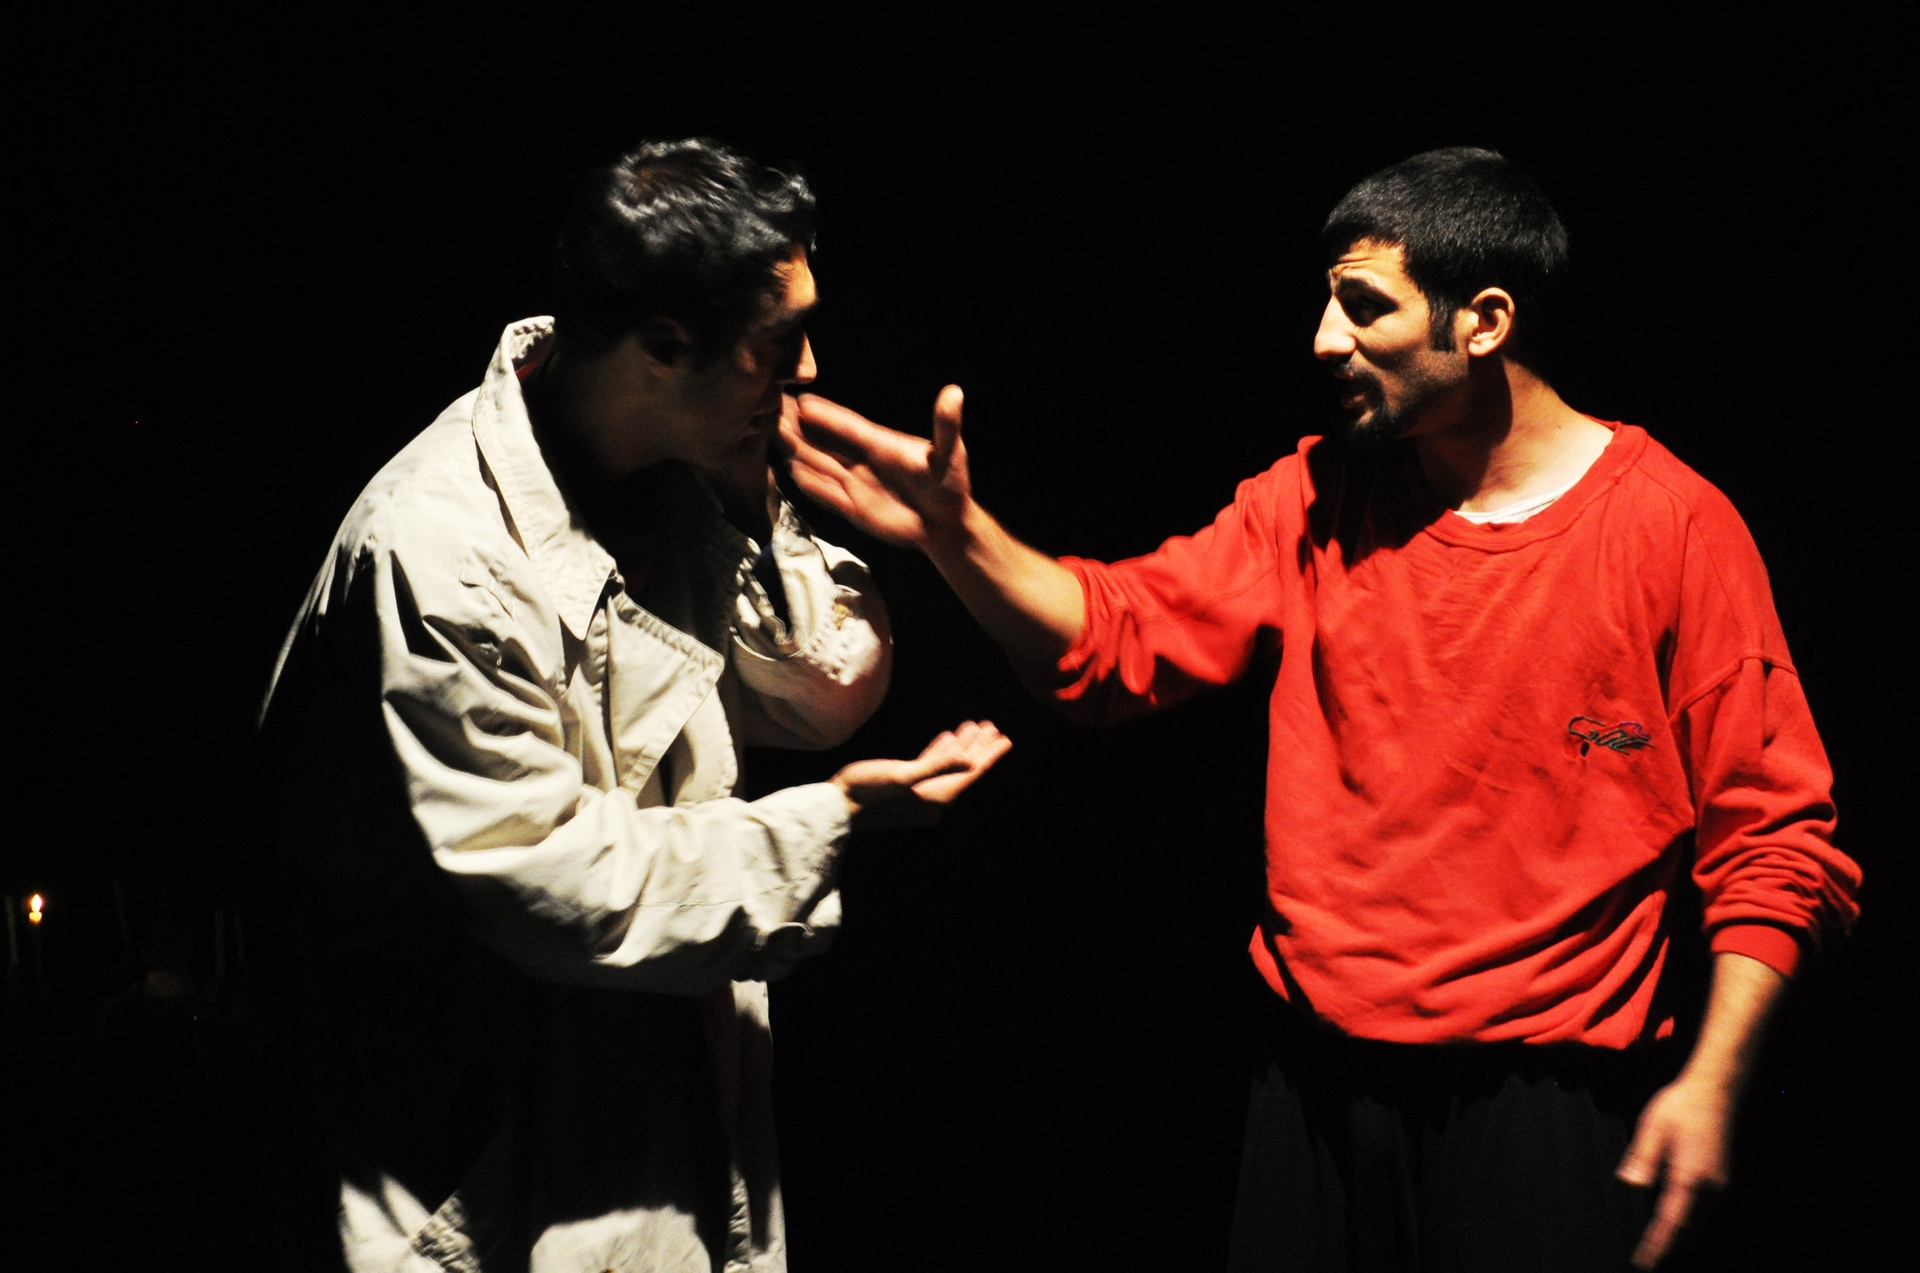 تصویری از کامبیز طاهری، بازیگر و کامپوزیت سینما و تلویزیون در حال بازیگری سر صحنه یکی از آثارش